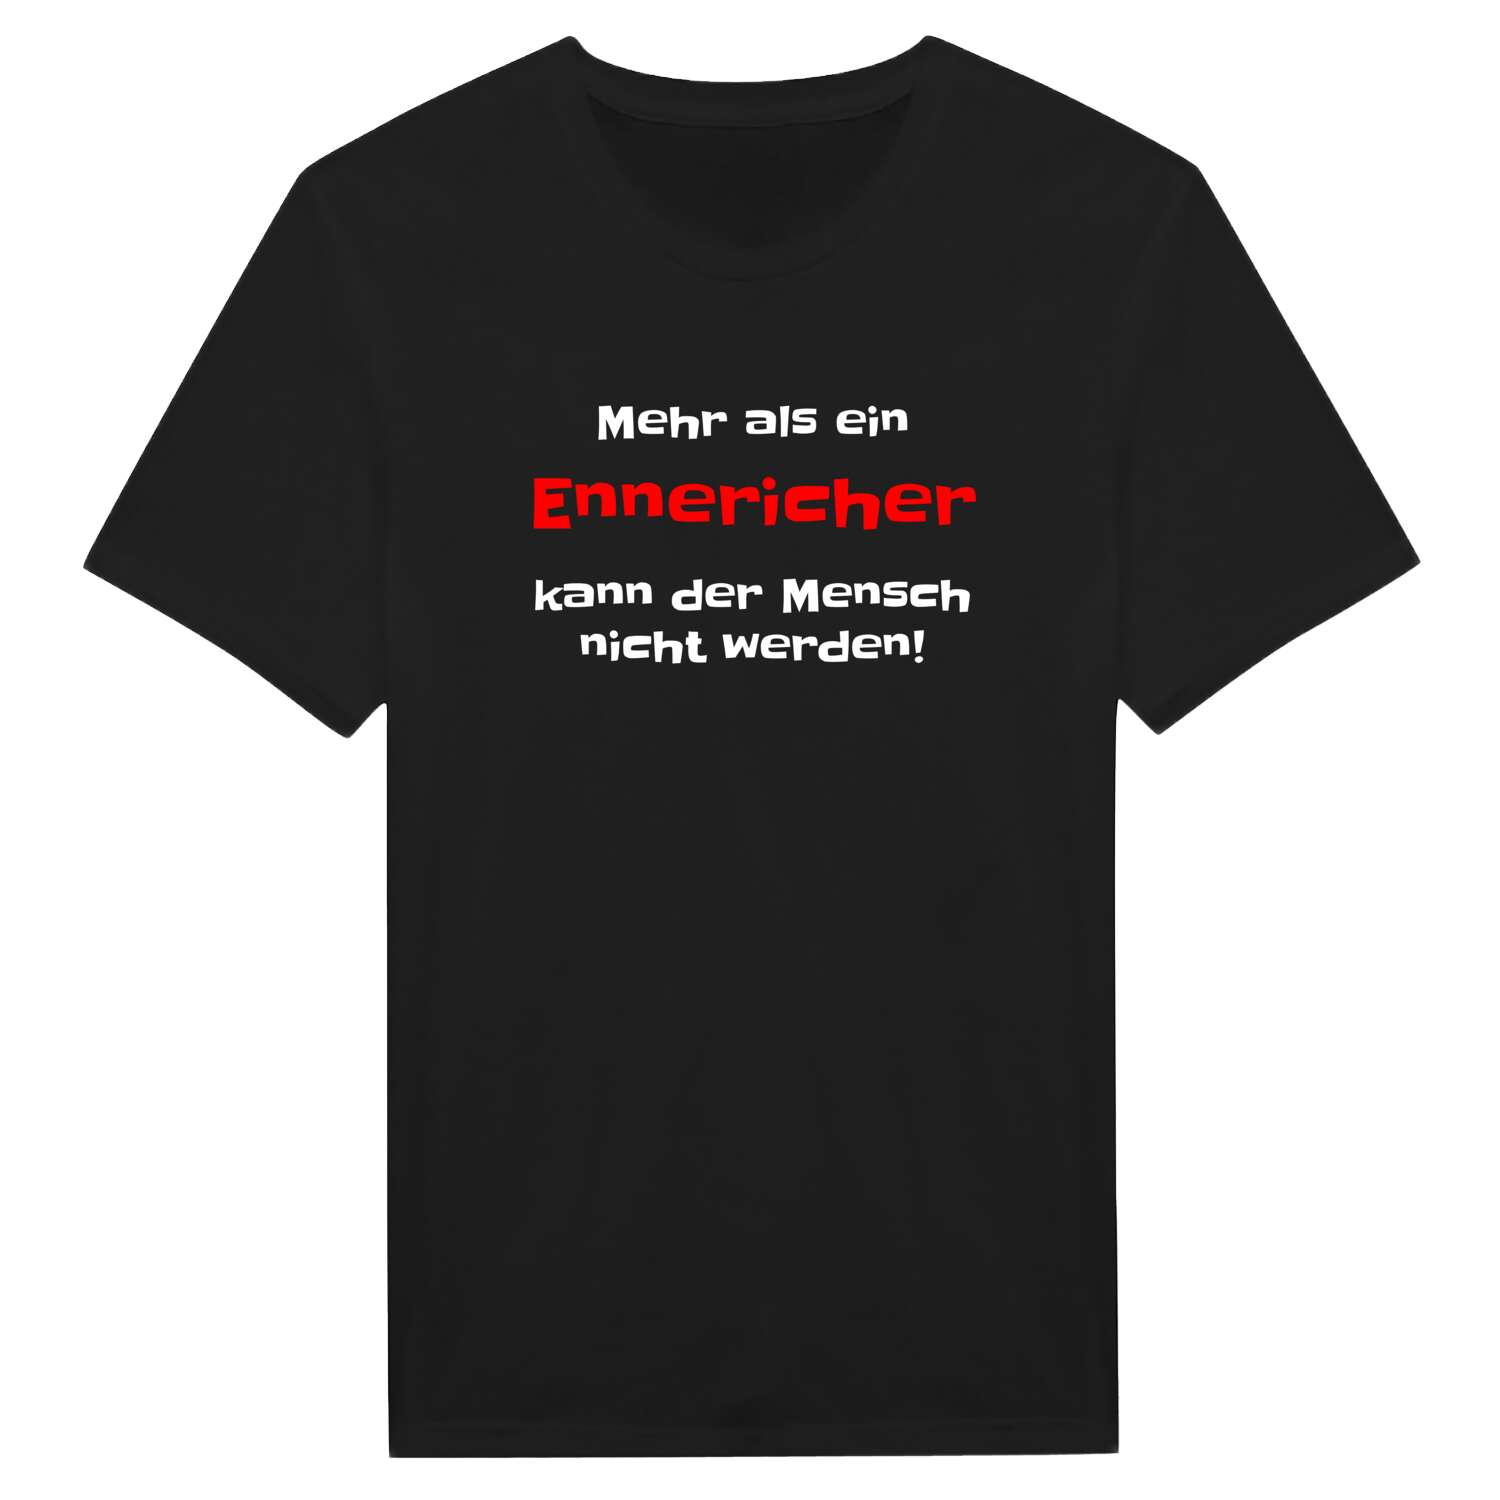 Ennerich T-Shirt »Mehr als ein«